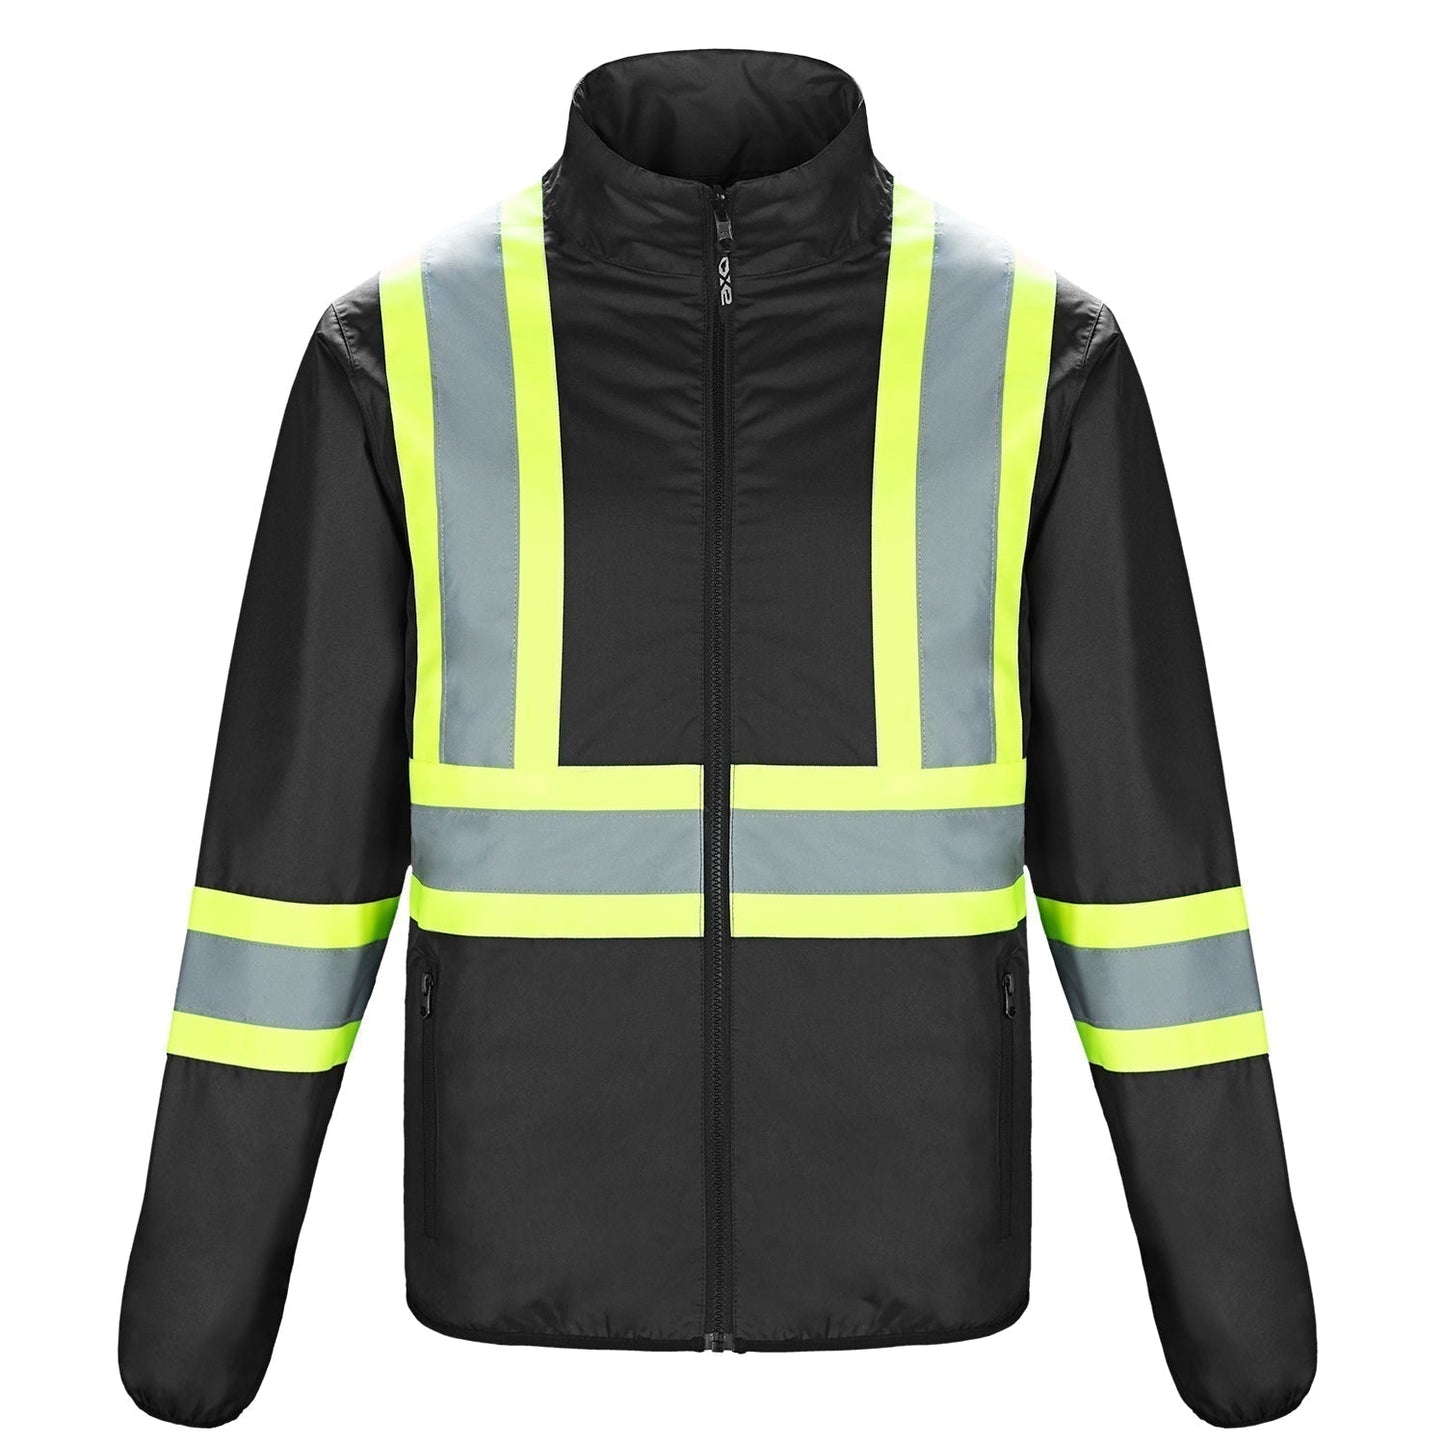 L01260 - Safeguard Men’s Hi - Vis Reversible Jacket Black